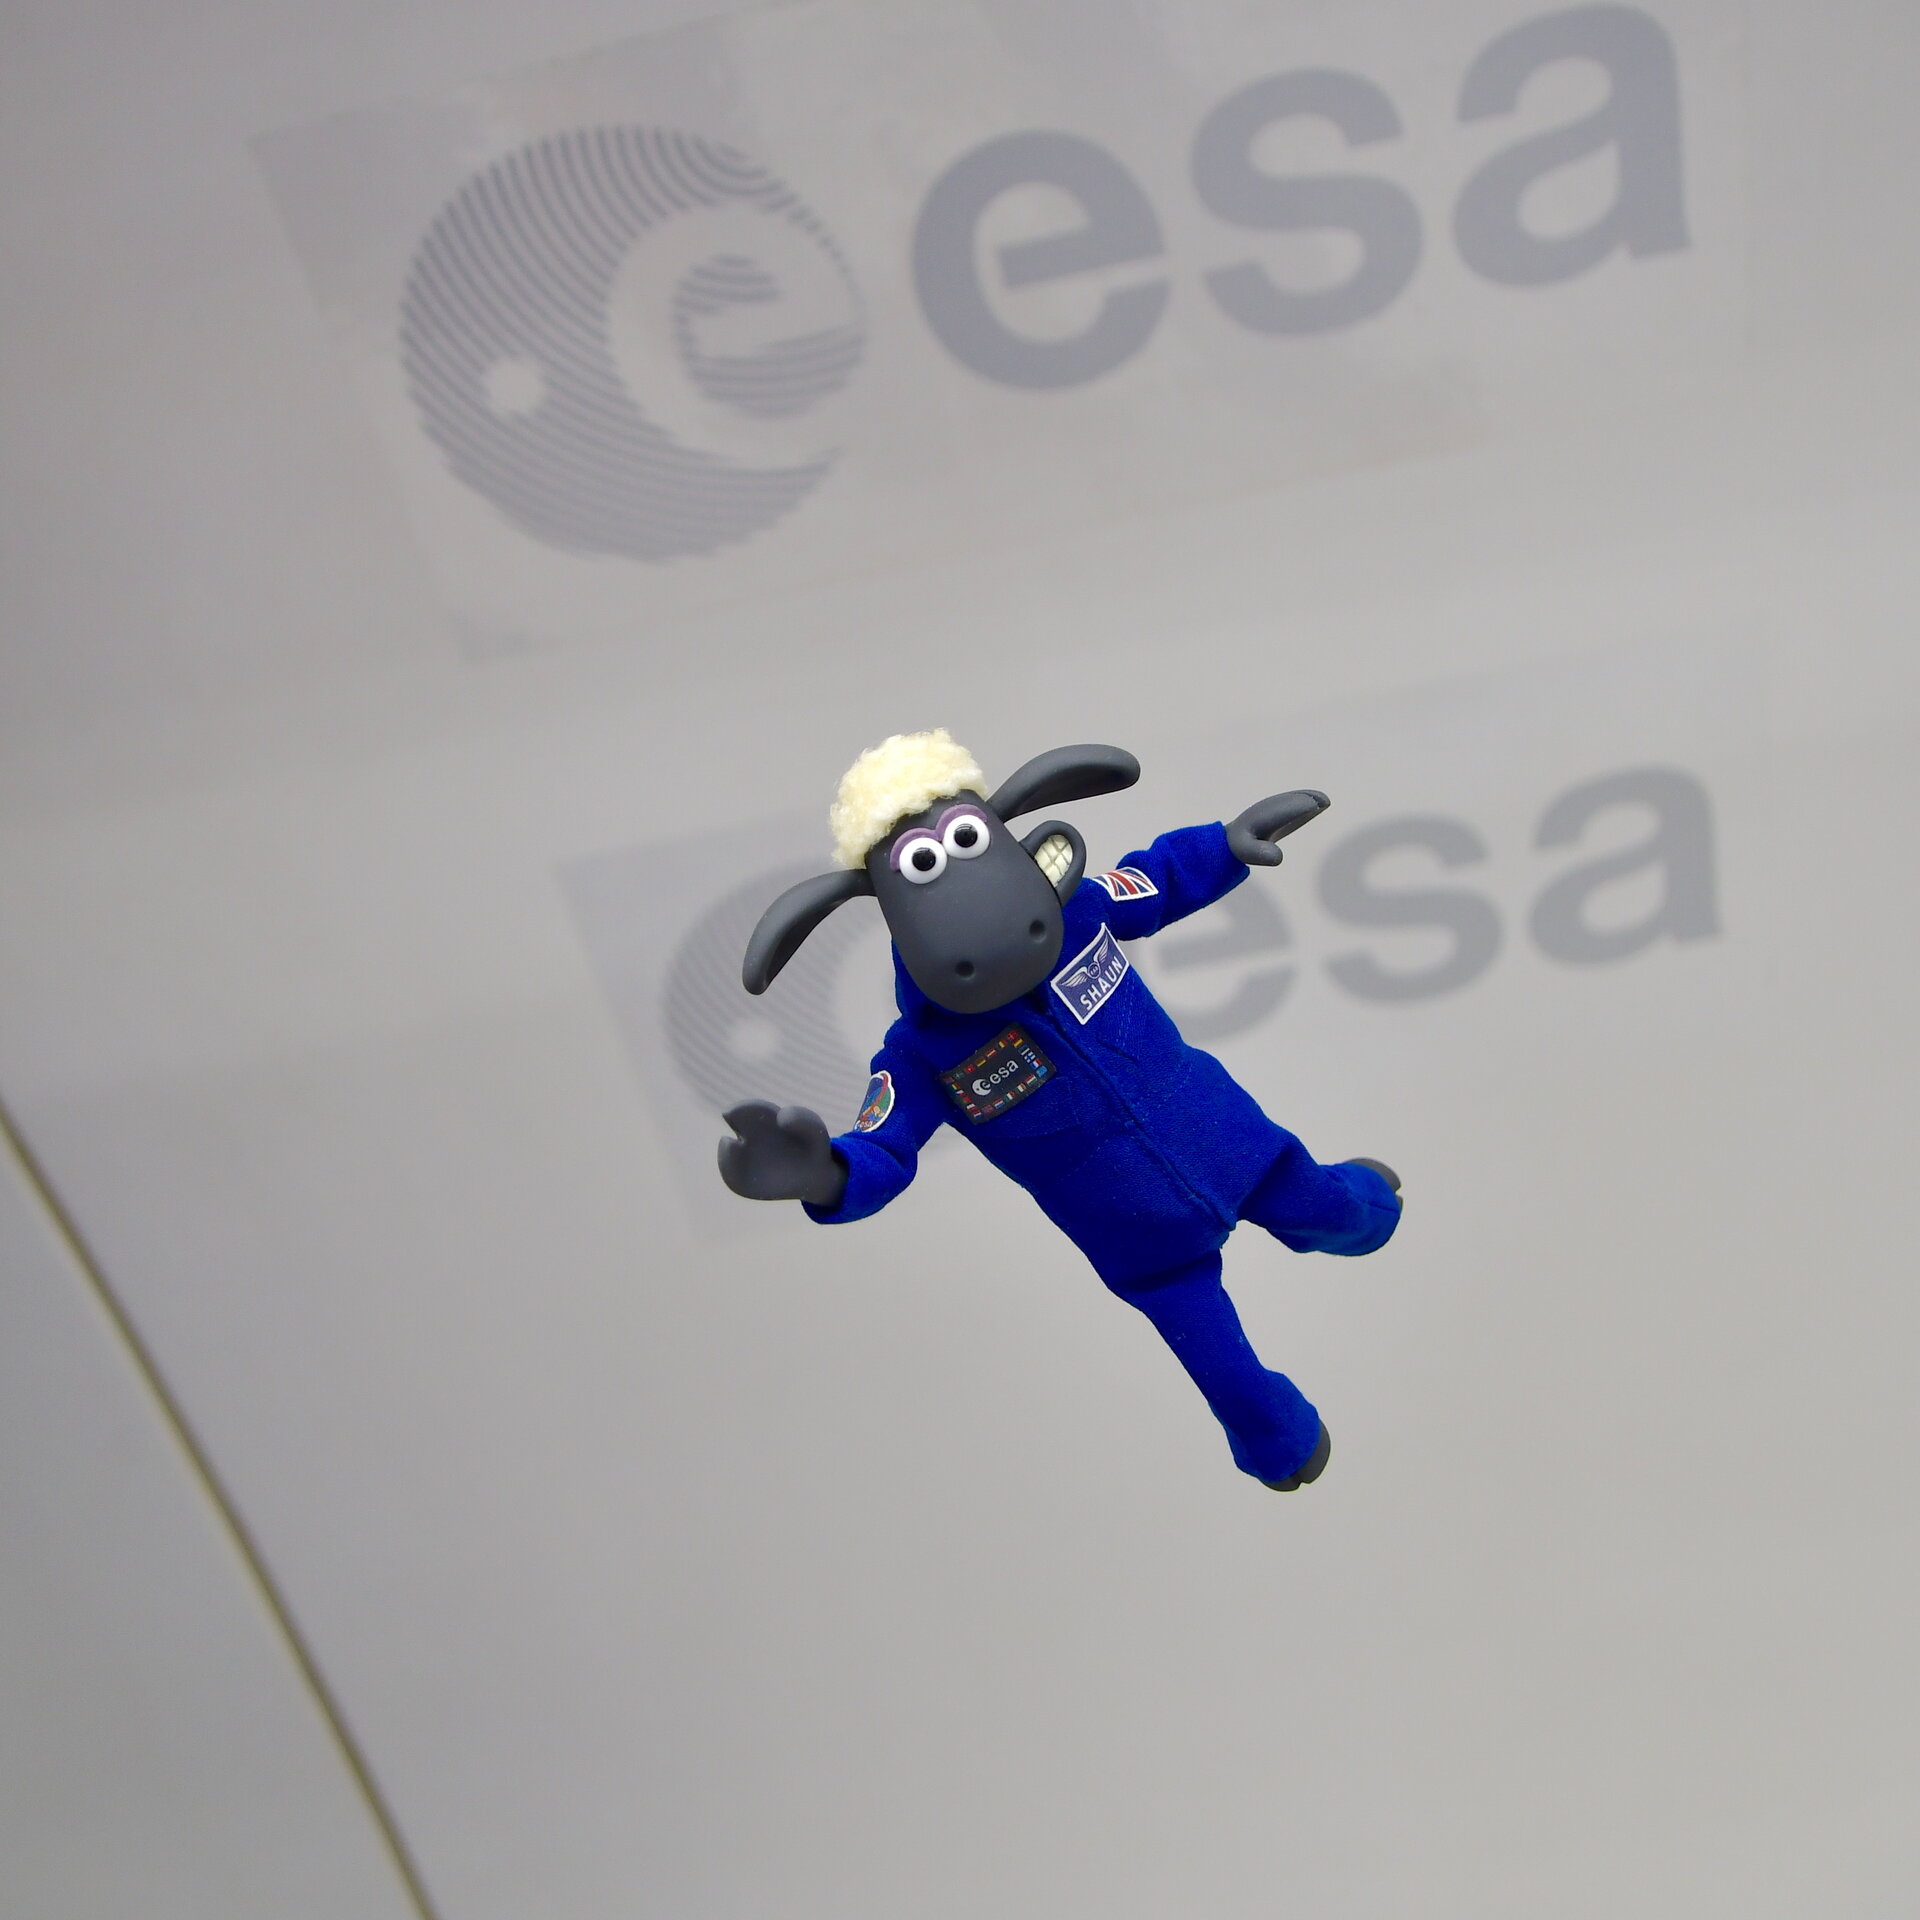 L’Agenzia Spaziale Europea annuncia il primo “astronauta” a volare sulla missione Artemis I. lunare